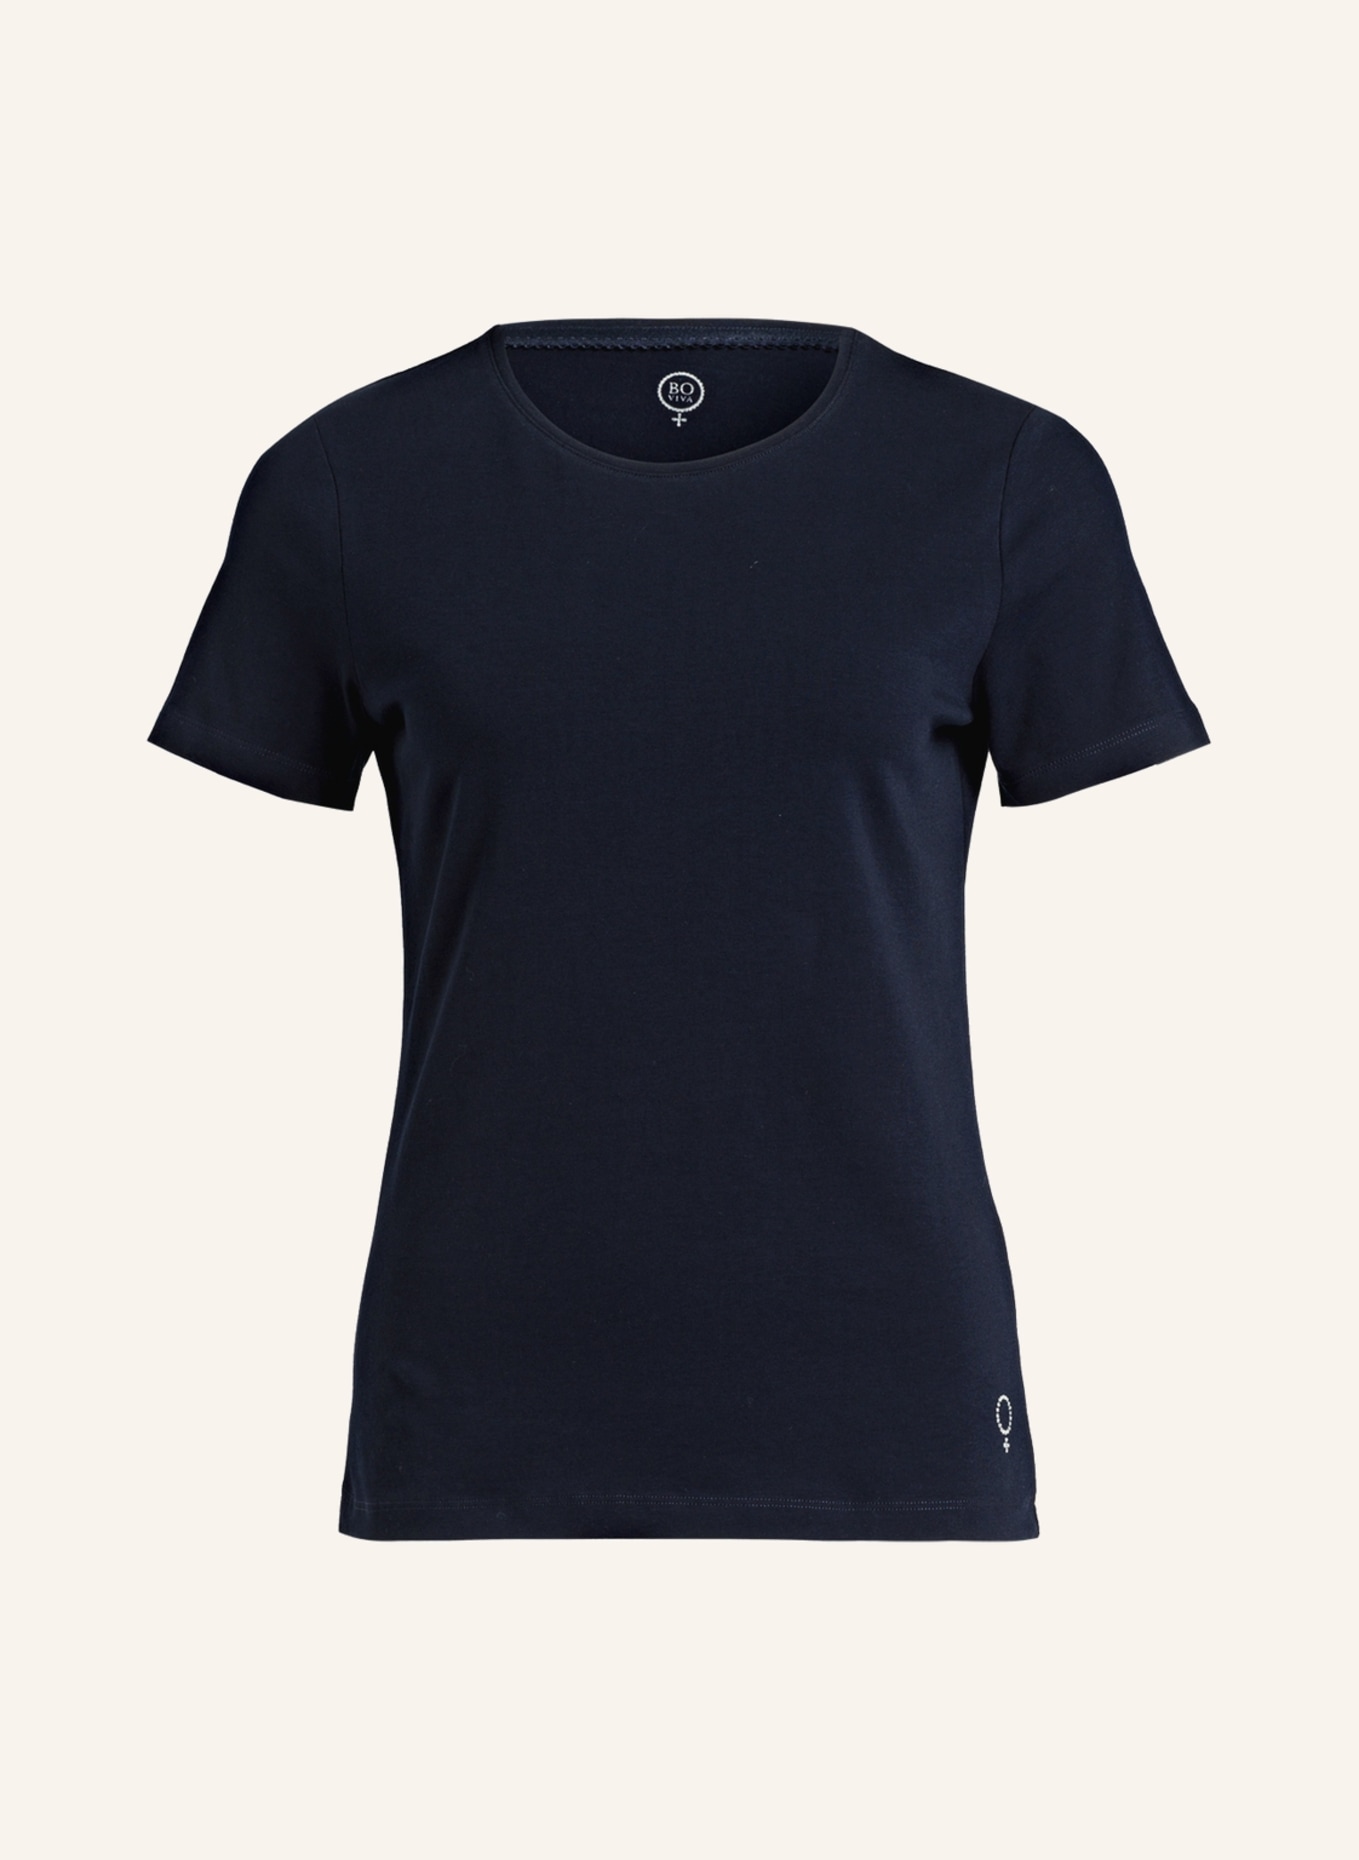 BOVIVA T-Shirt mit Schmucksteinen, Farbe: DUNKELBLAU (Bild 1)